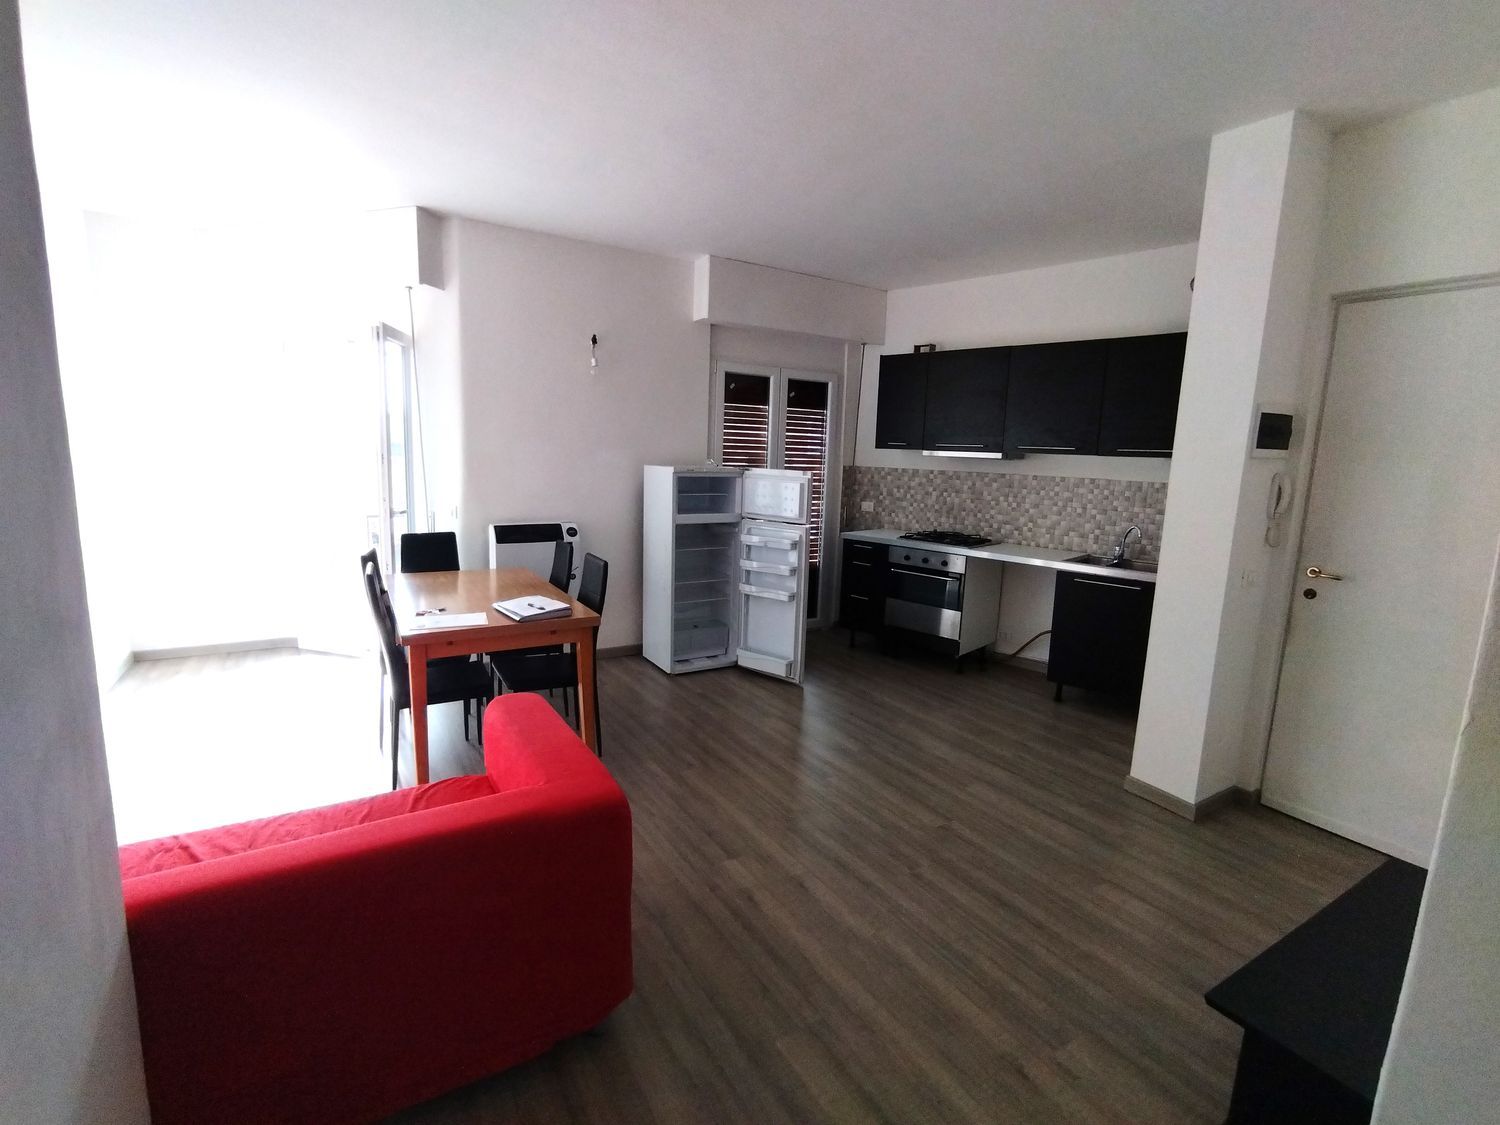 Appartamento in vendita a Colazza, 2 locali, prezzo € 55.000 | PortaleAgenzieImmobiliari.it